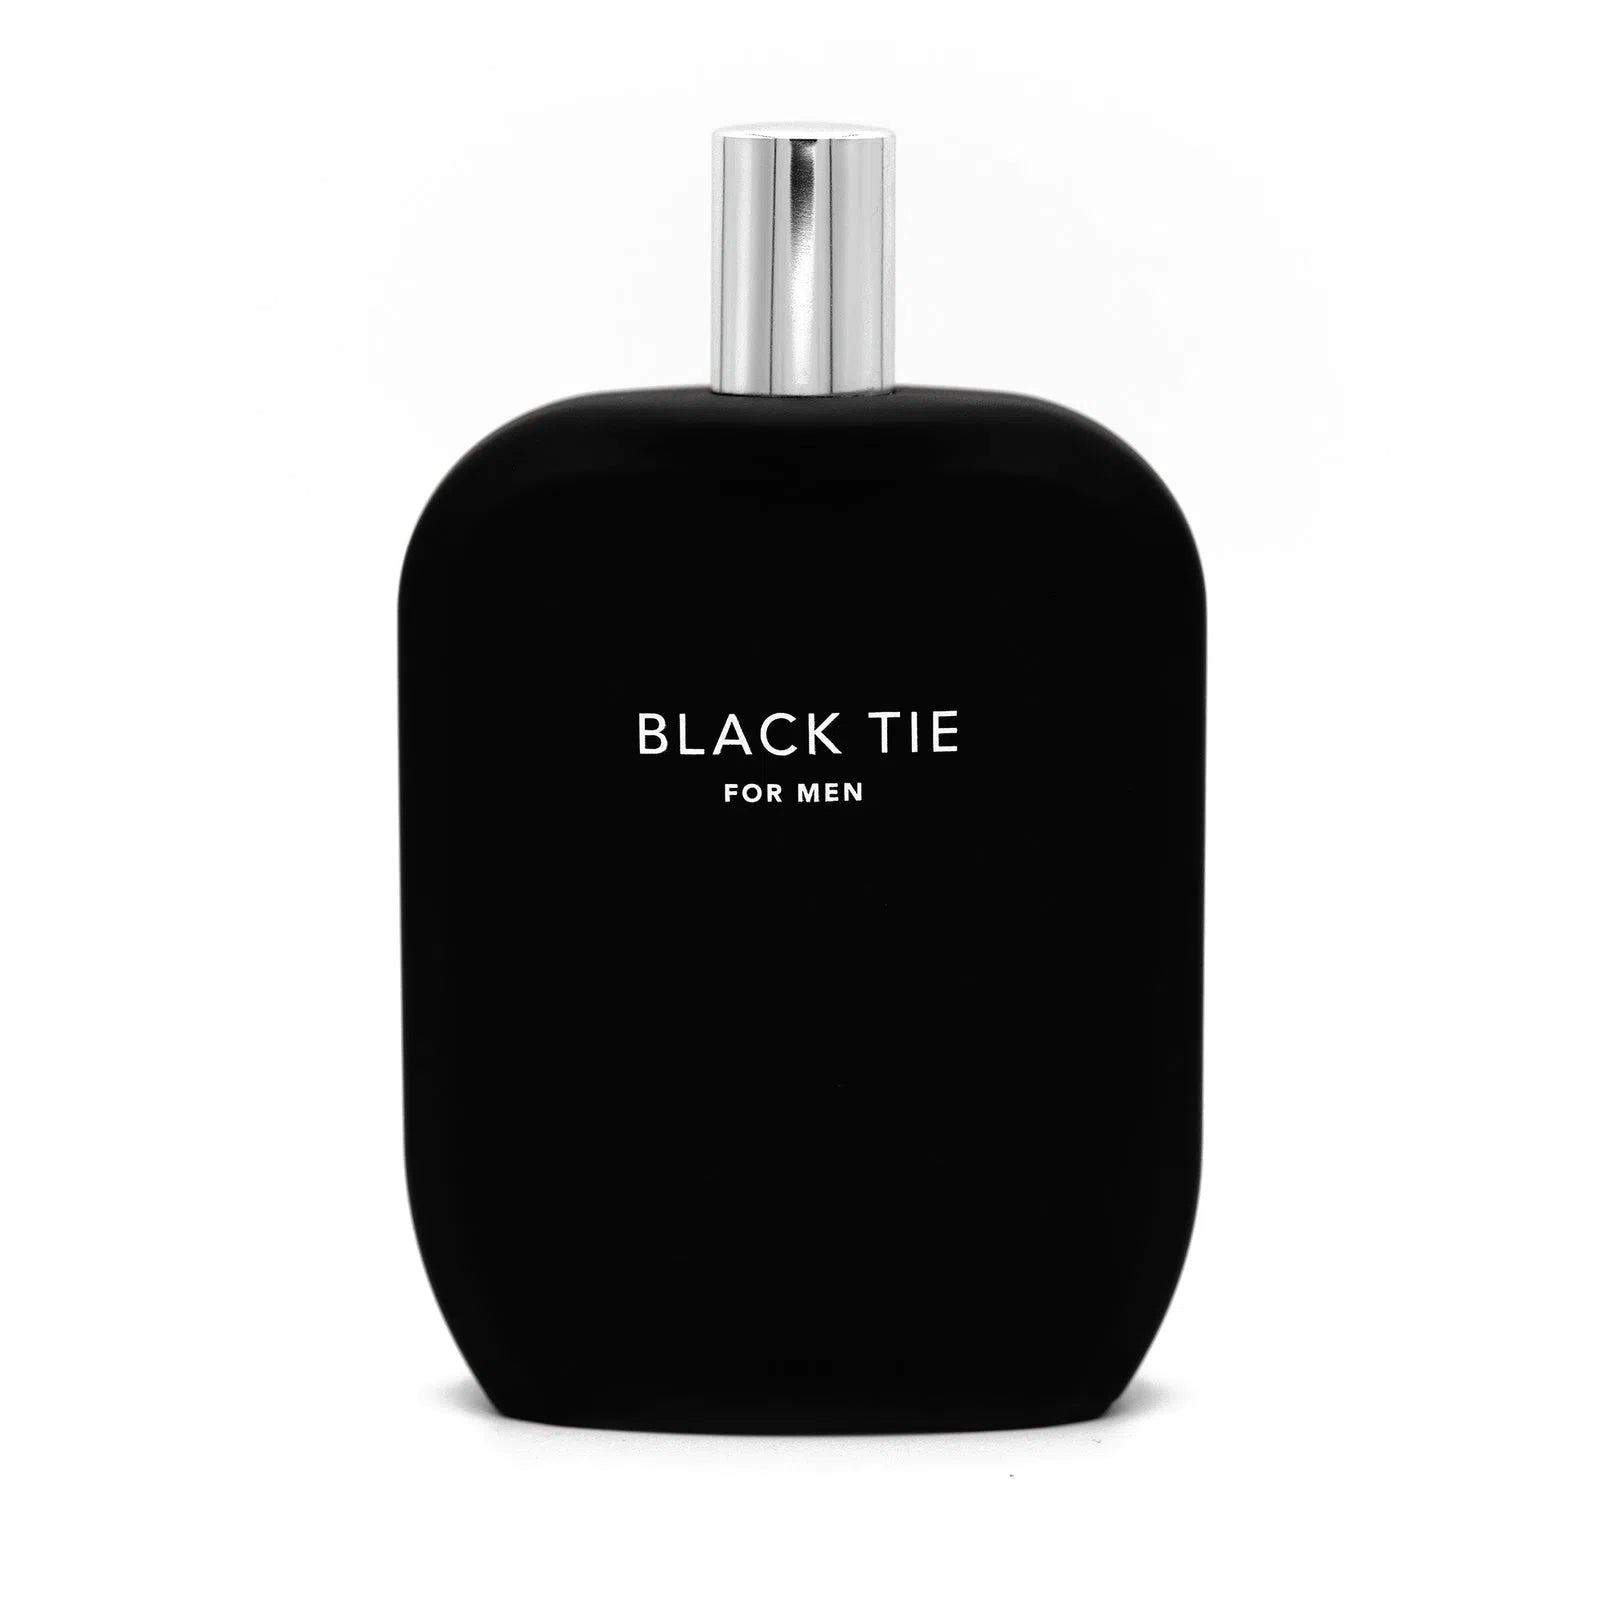 Perfume Jeremy Fragrance Black Tie for Men Extrait de Parfum (M) / 100 ml - 07050565- Prive Perfumes Honduras